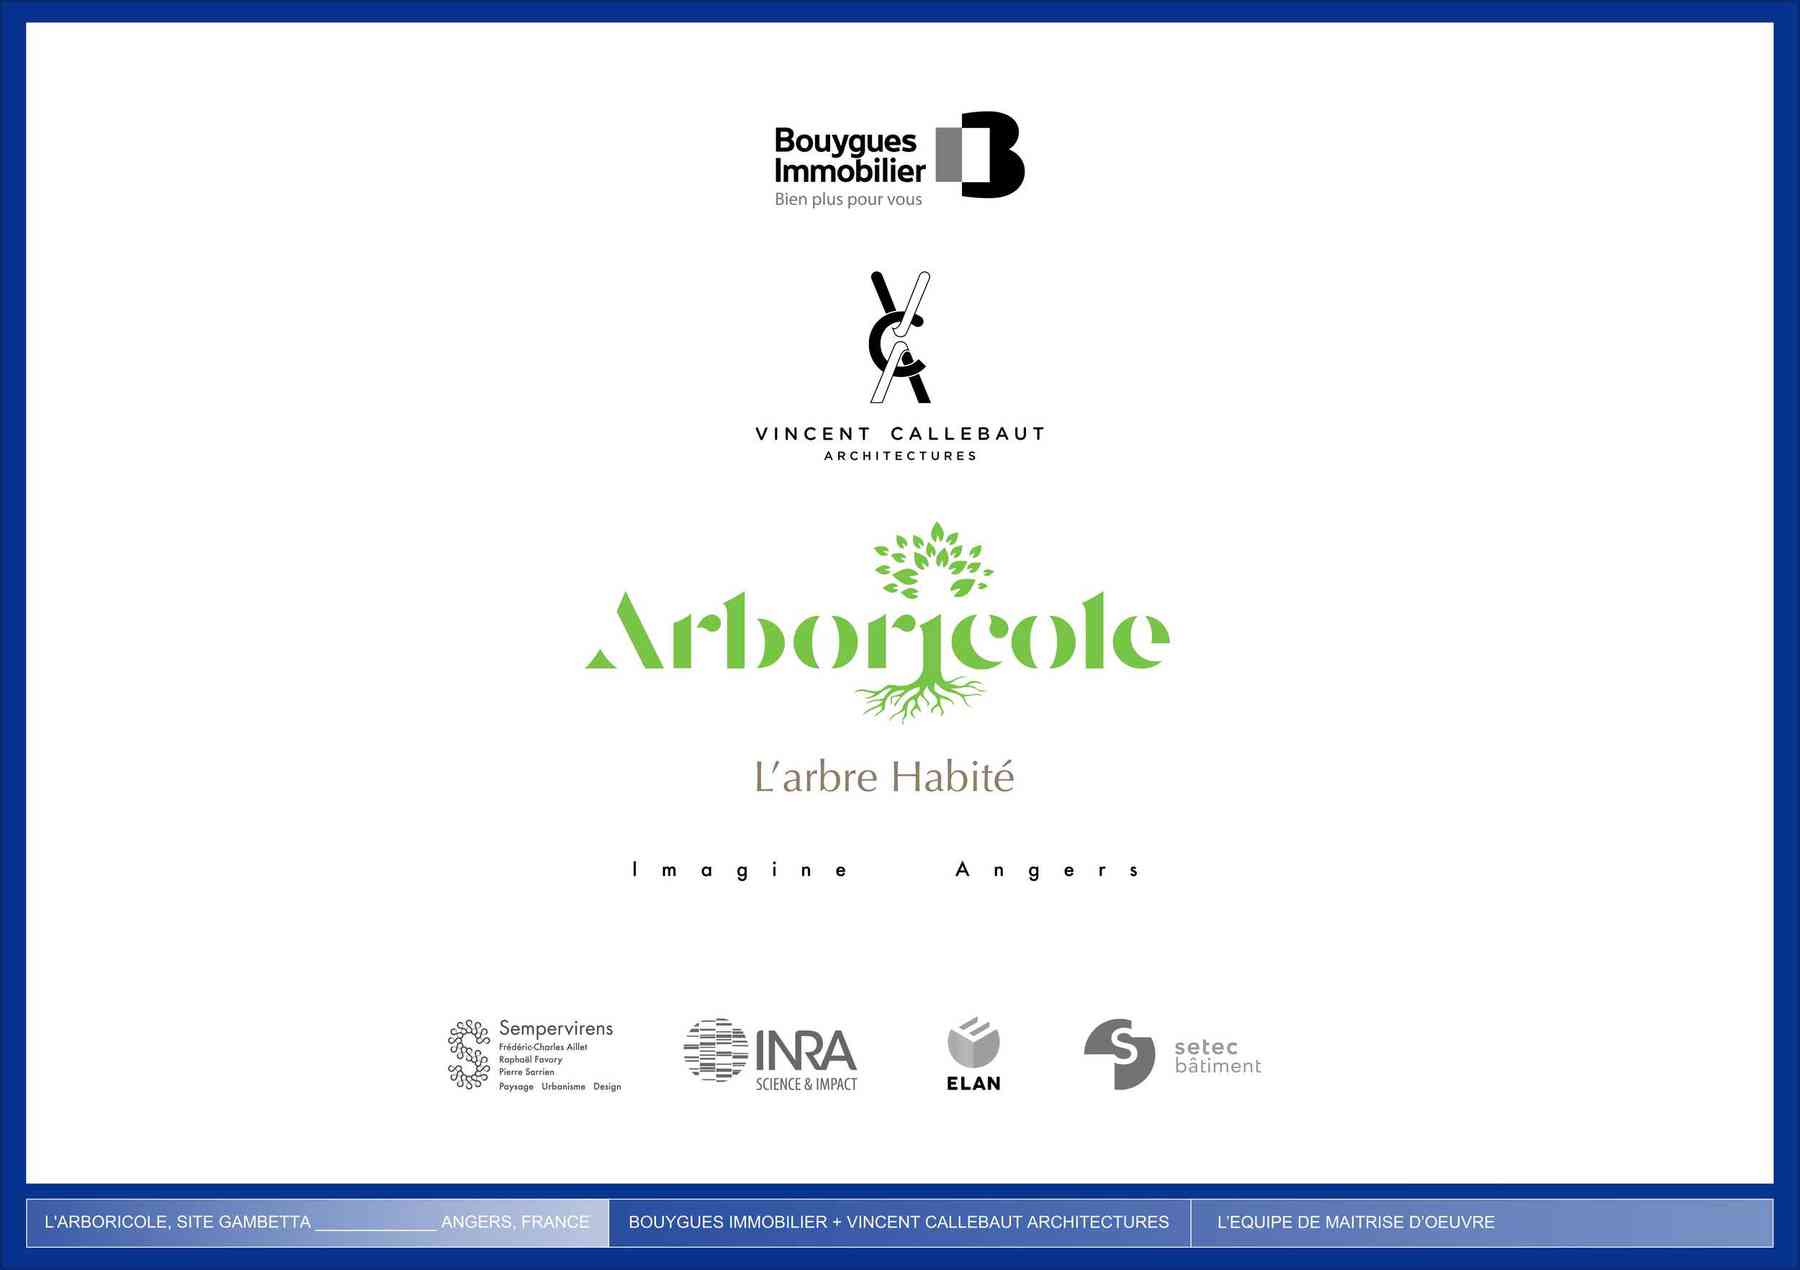 180314_arboricole-arboricole_pl056